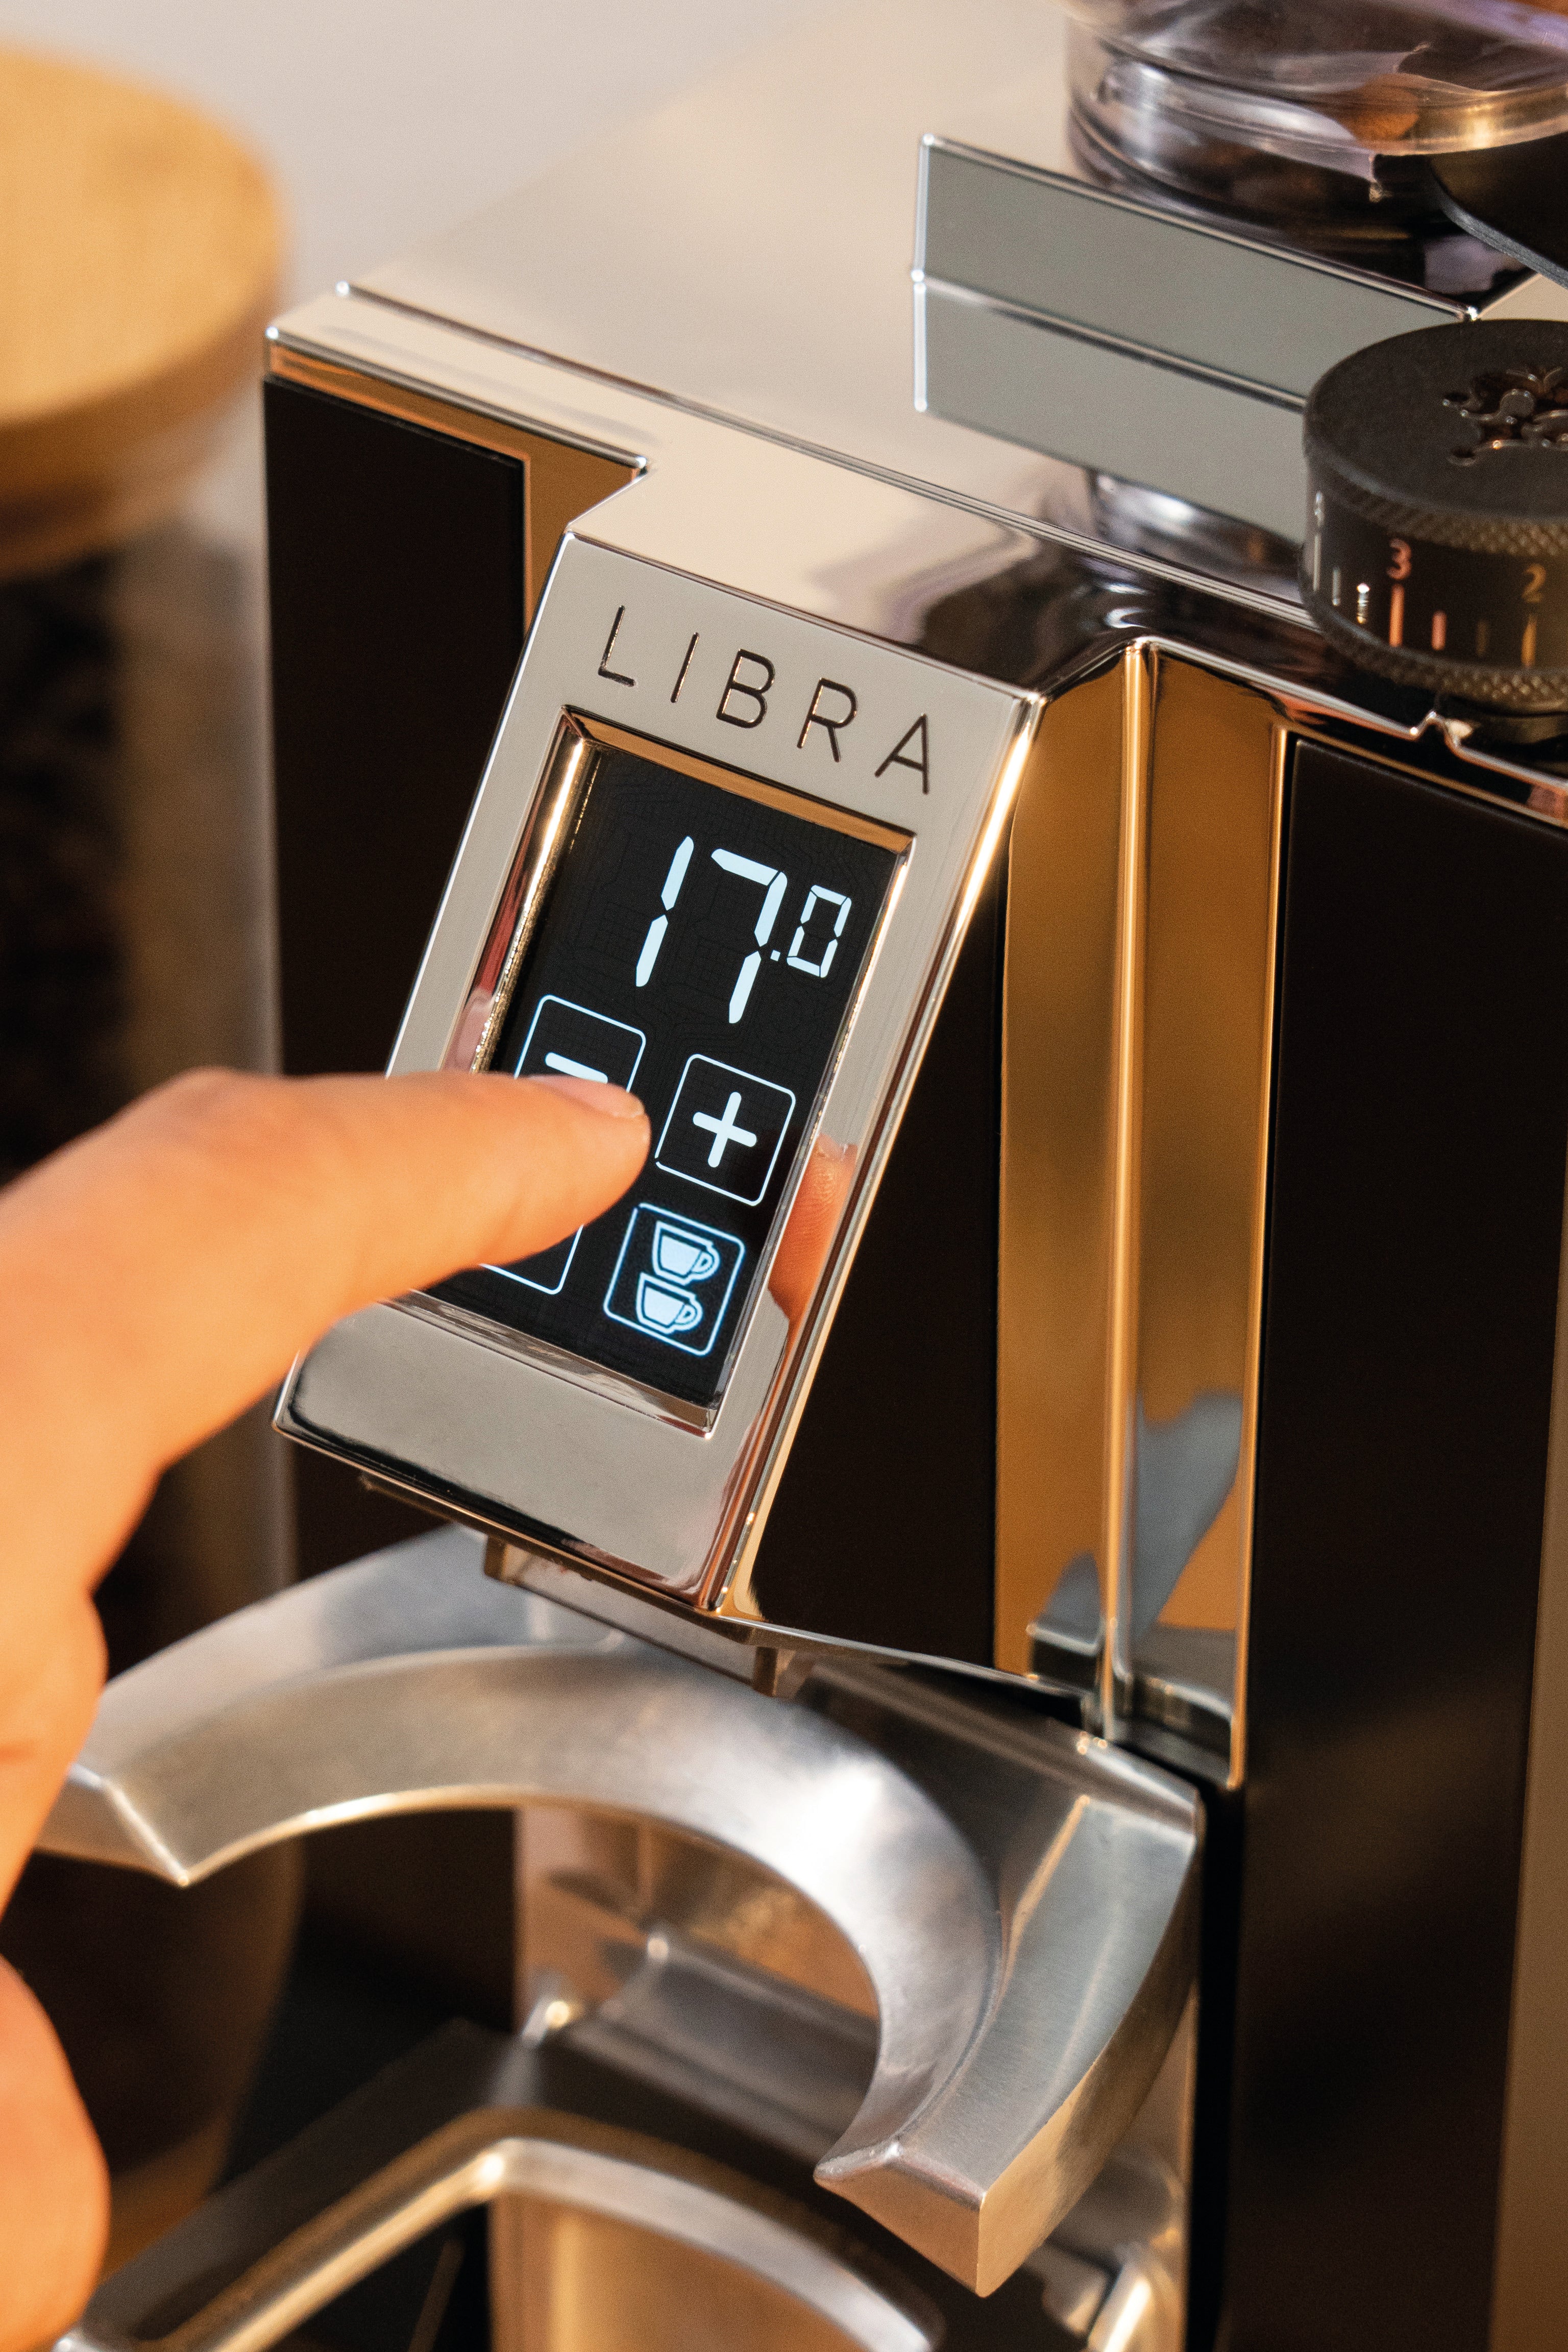 Eureka Mignon Libra 16CR Espresso Coffee Grinder, Black